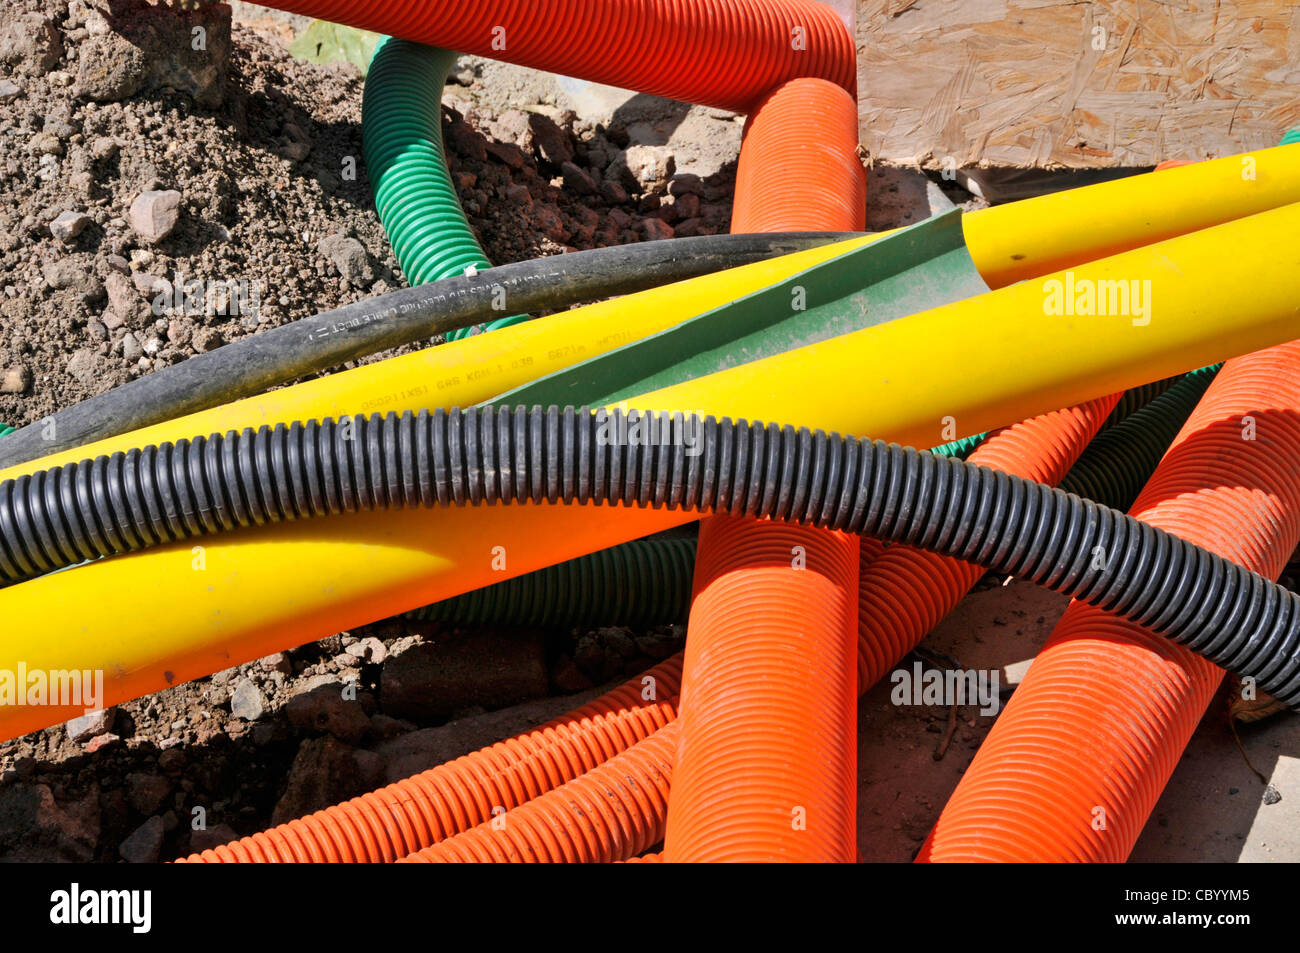 Les travaux routiers de scène de rue ont embrouillé un tas de chutes de tubes en plastique colorés assortis pour les services publics souterrains électricité gaz Londres Angleterre Royaume-Uni Banque D'Images